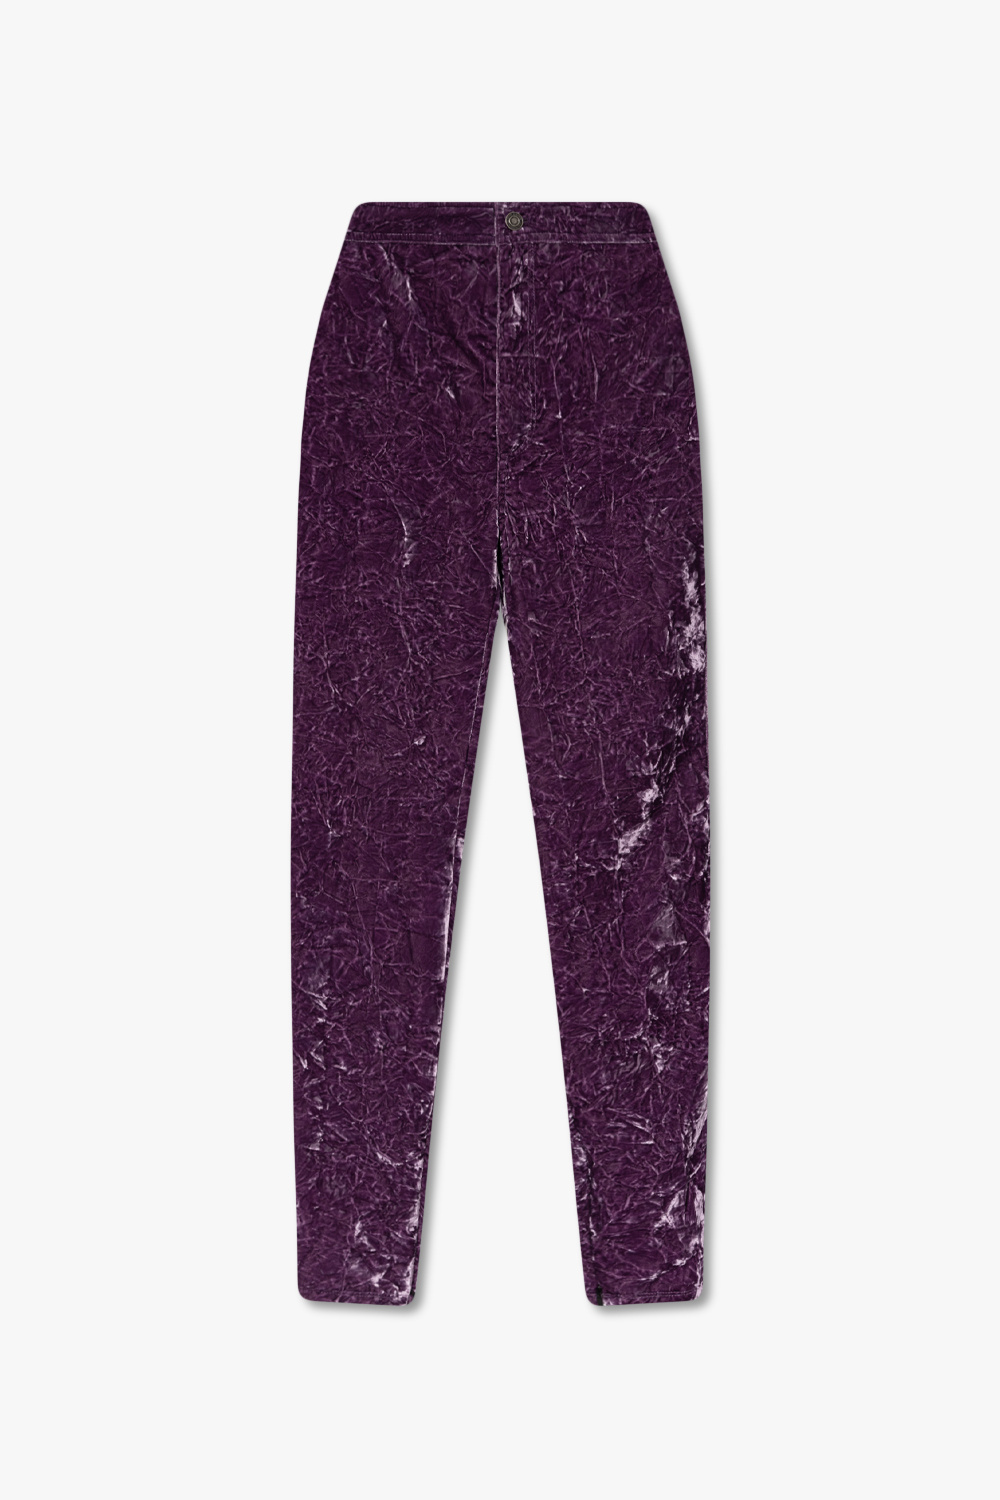 Saint Laurent Velvet trousers